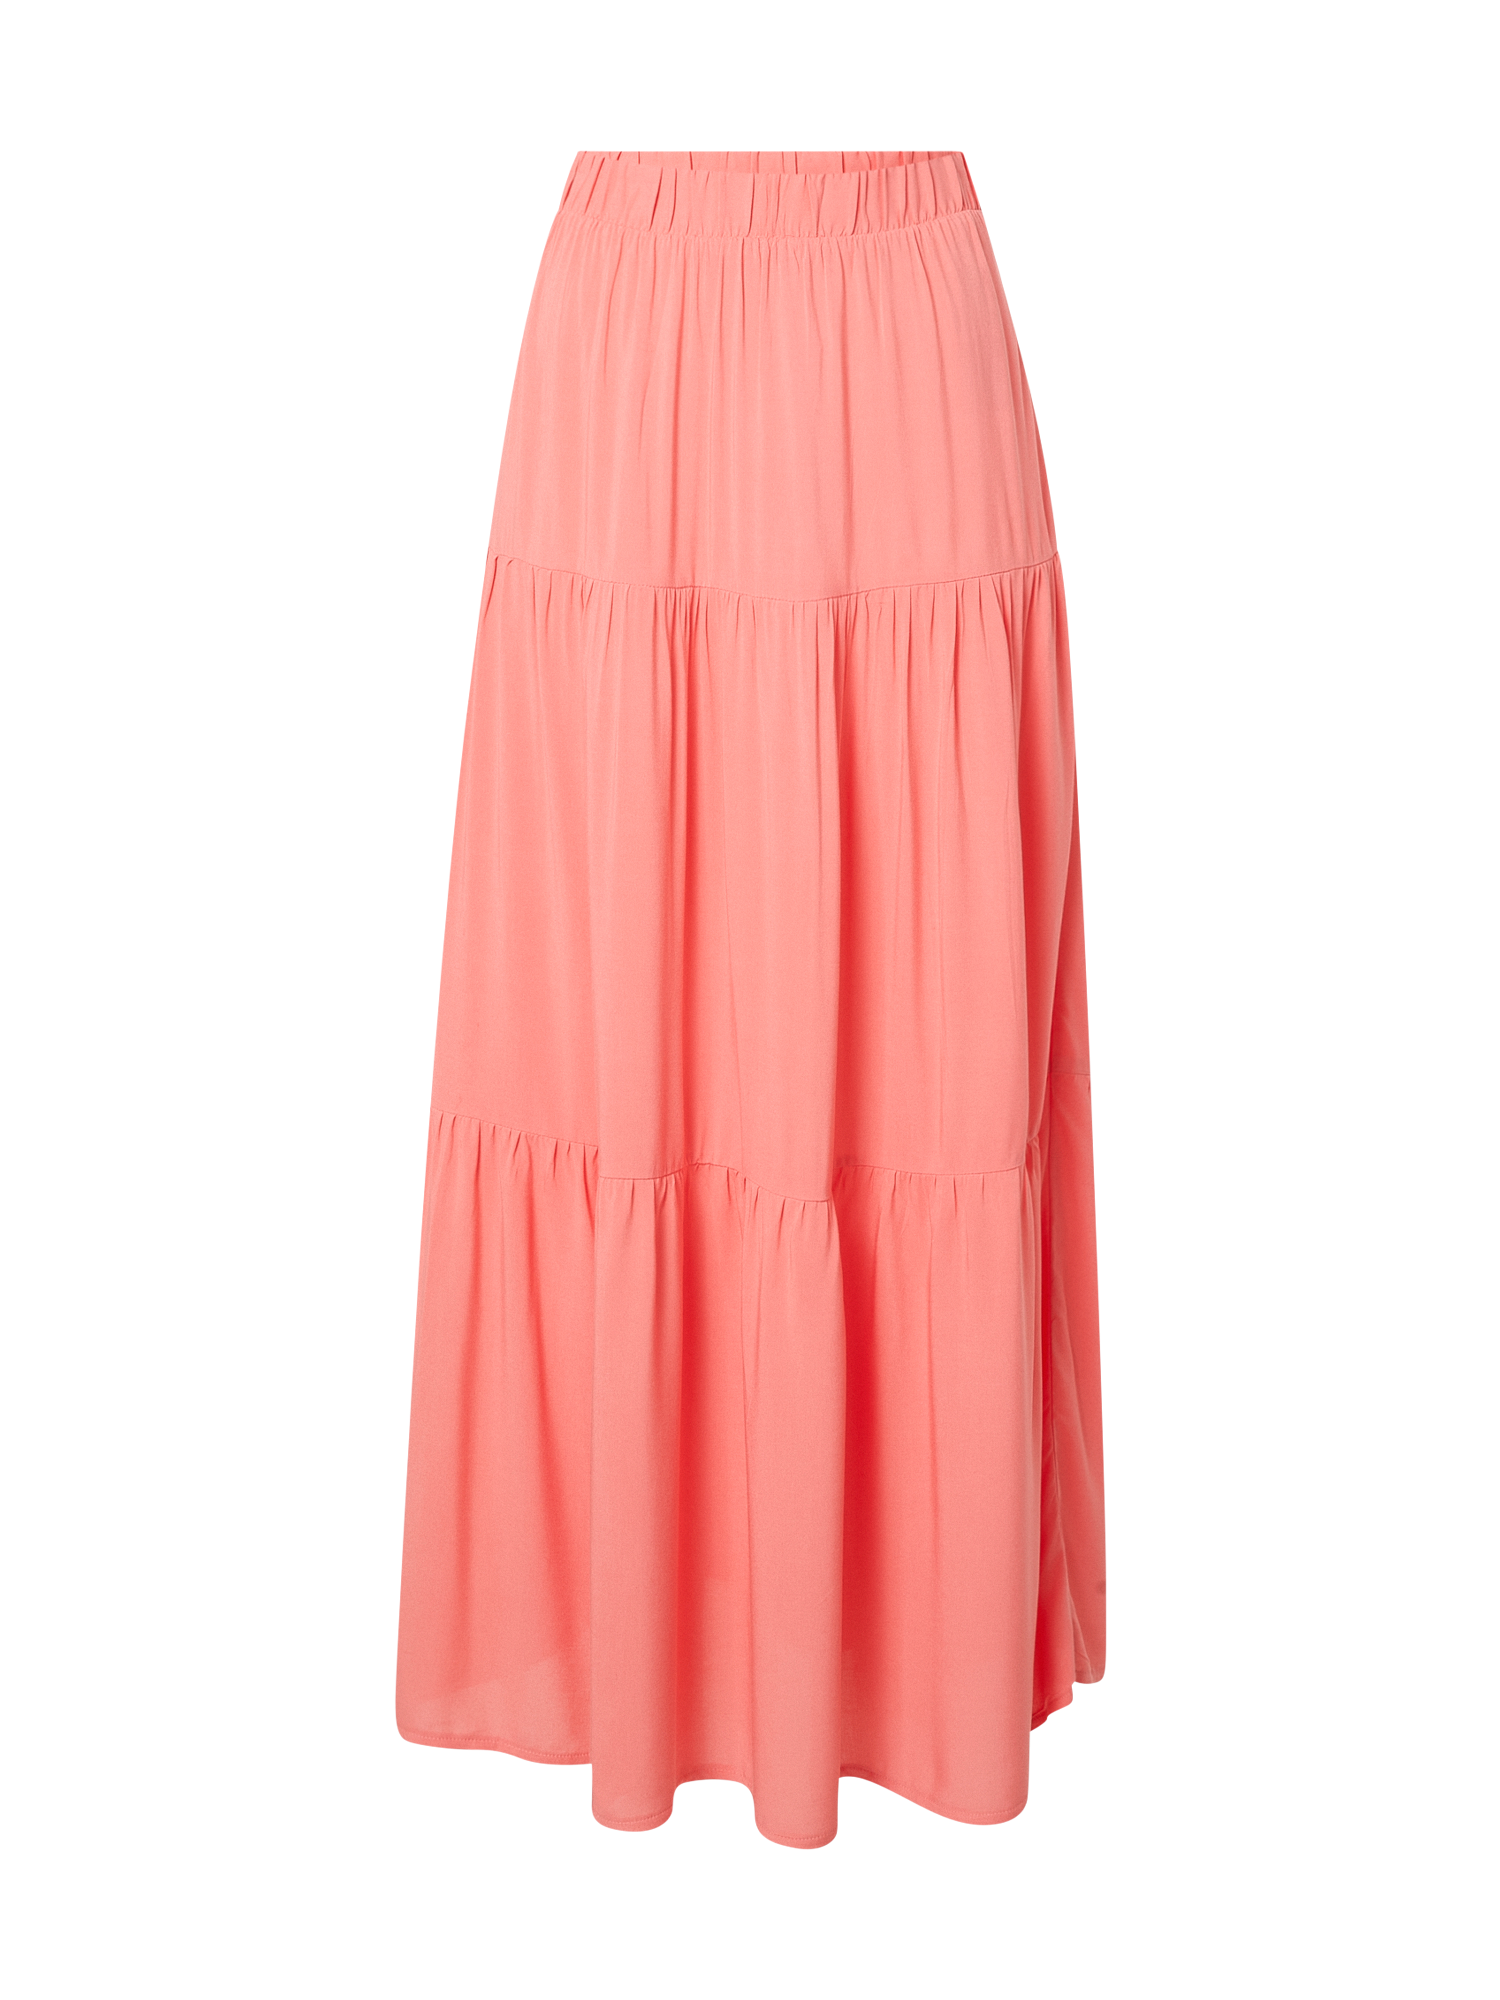 Kobiety Odzież Sublevel Spódnica w kolorze Koralowym 